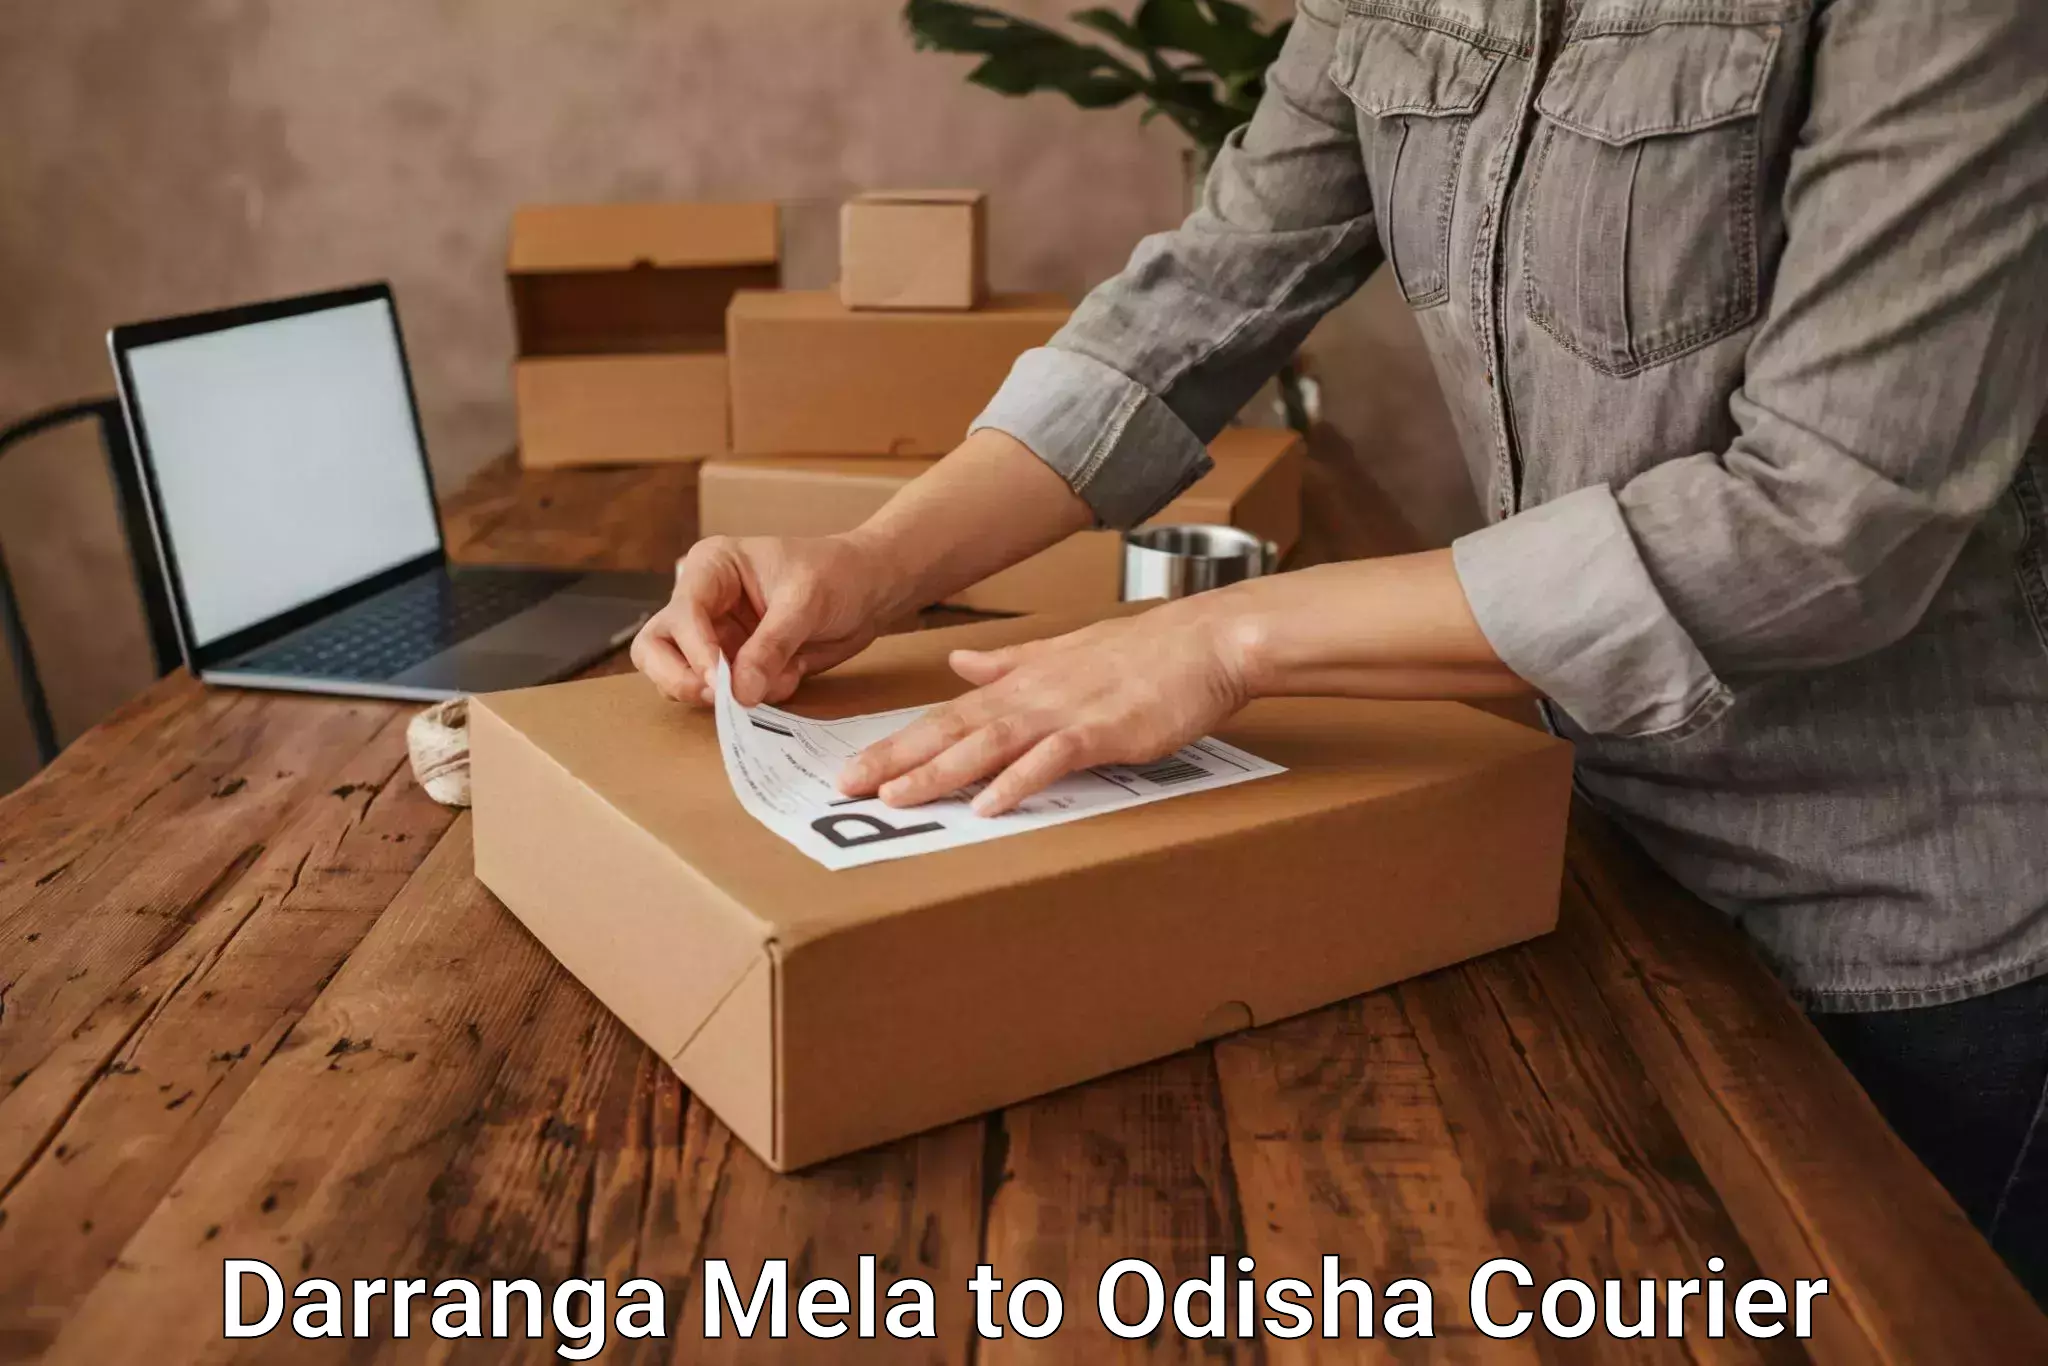 Specialized courier services Darranga Mela to Gumadera